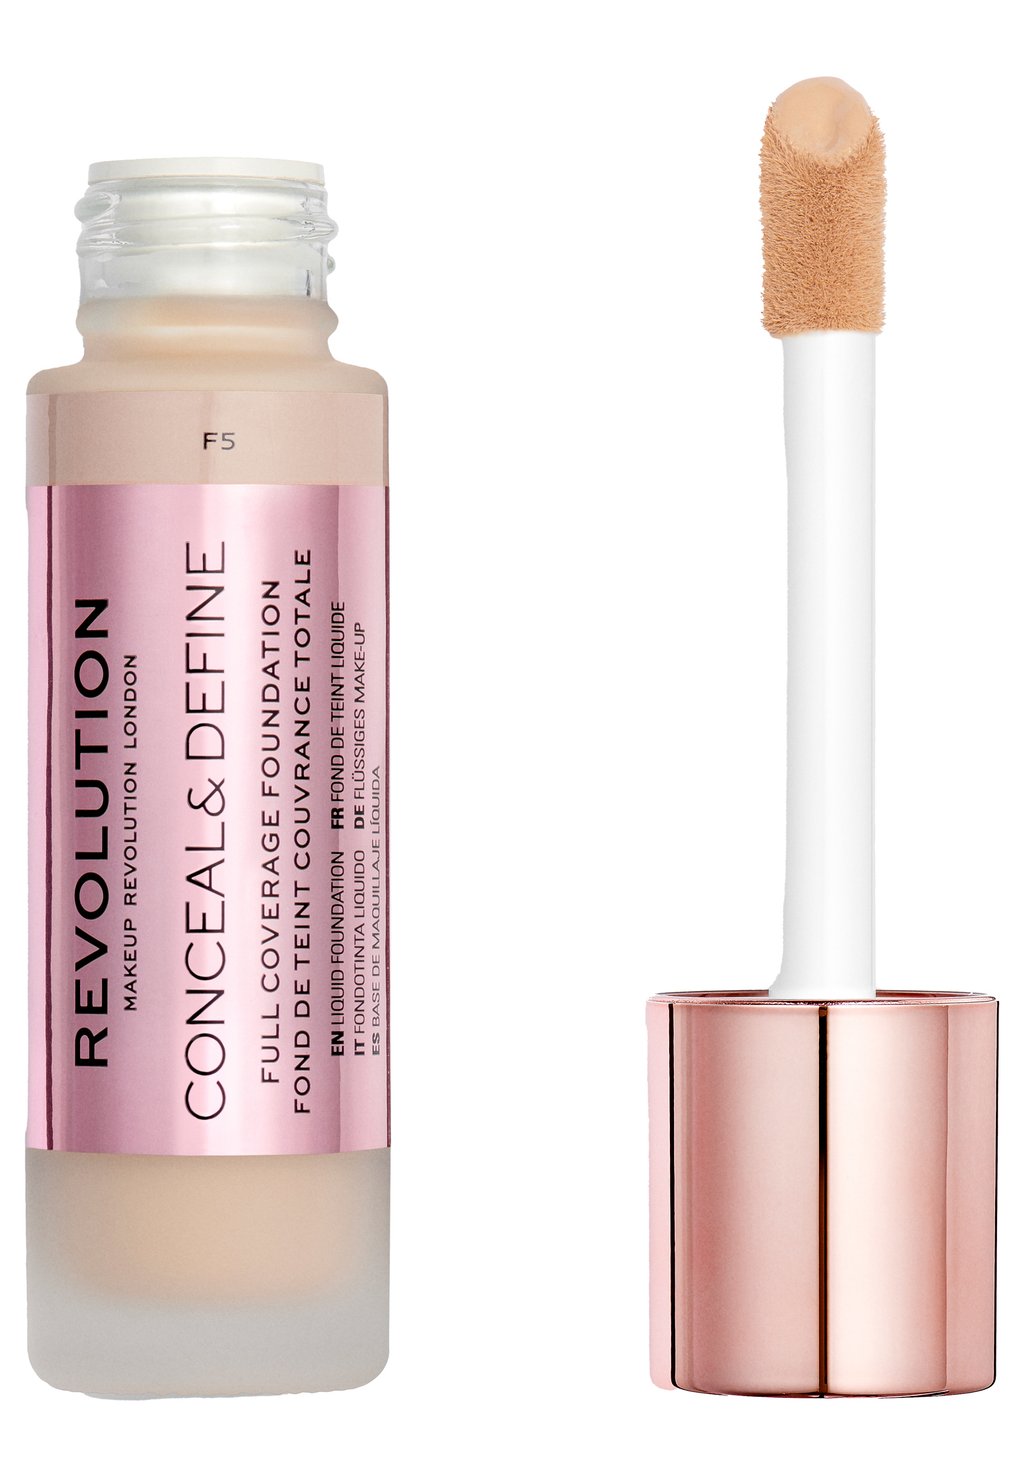 Тональный крем Conceal & Define Foundation Makeup Revolution, цвет f5